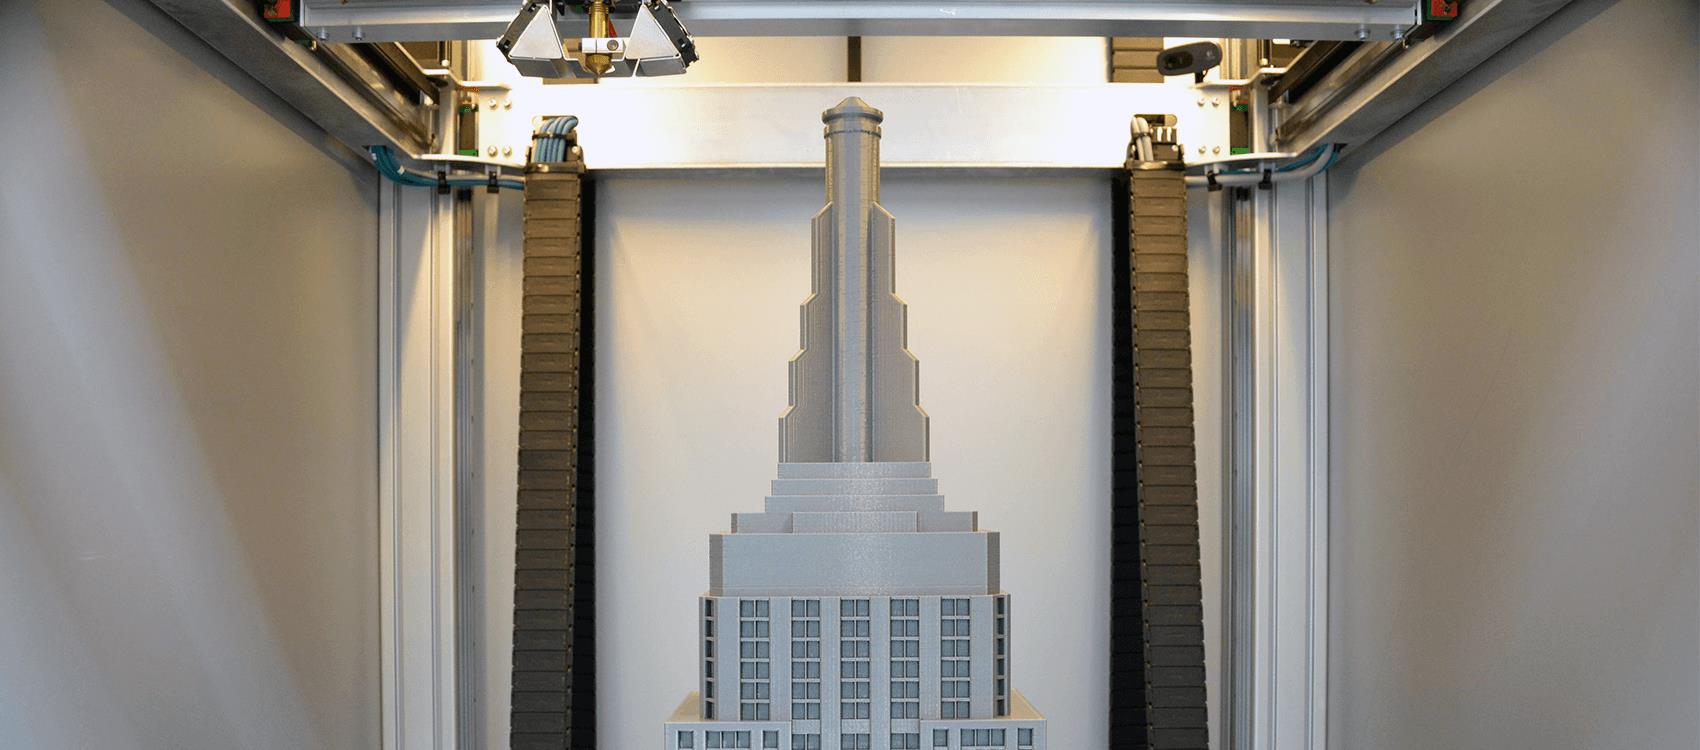 由Builder 3D制作的帝国大厦顶部3D打印机。